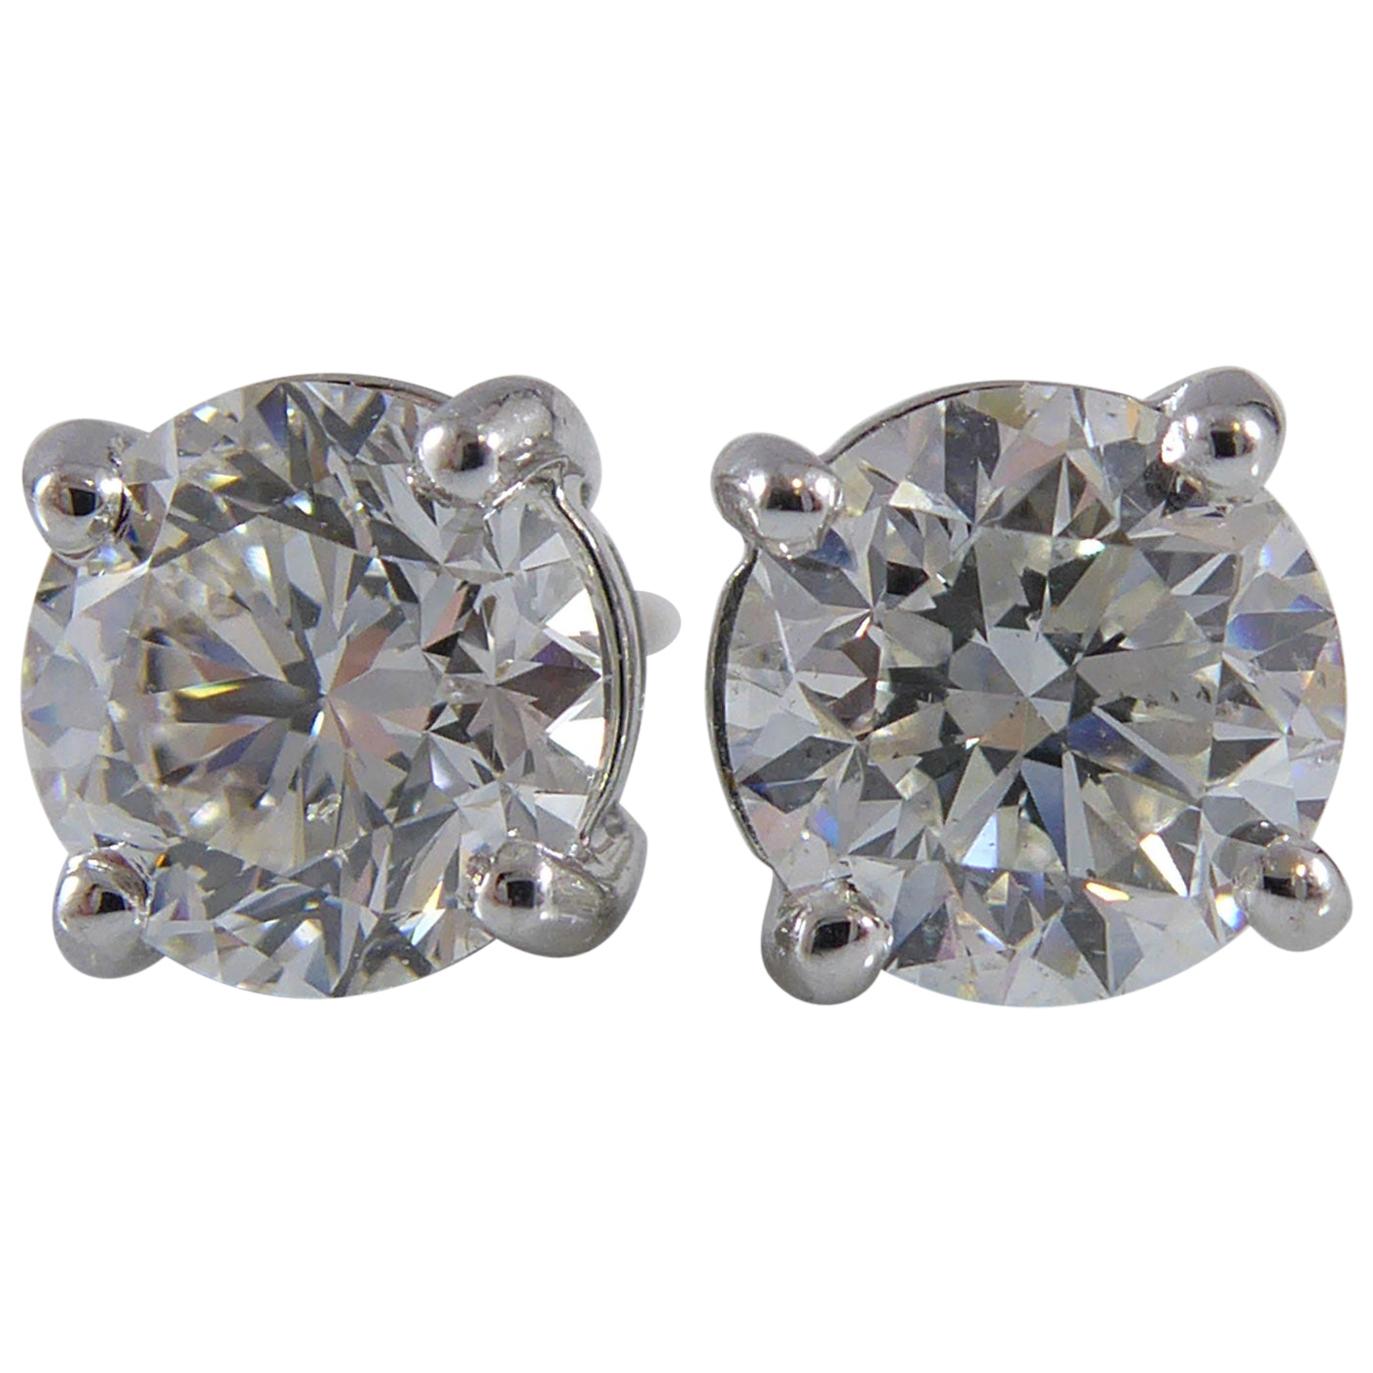 2.01 Carat Diamond Earrings, Certified Round Brilliant Cut Diamonds